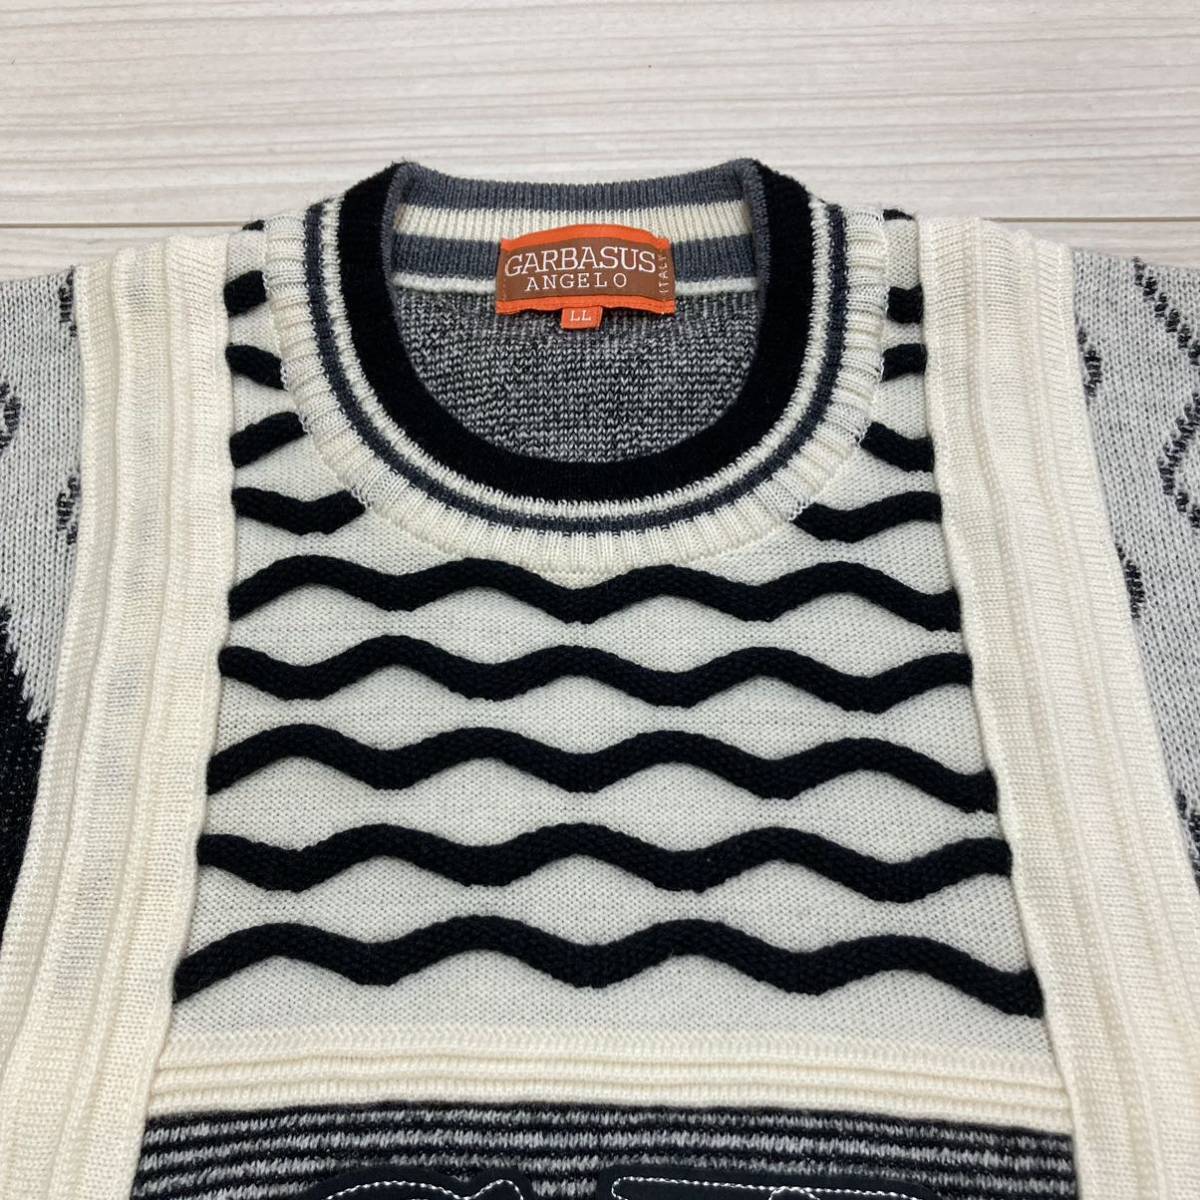  прекрасный товар # Anne jerogaru автобус #3D цельный плетеный вязаный свитер вышивка нашивка LL белый черный Showa Retro ANGELO GARBASUS обычная цена 39600 иен 